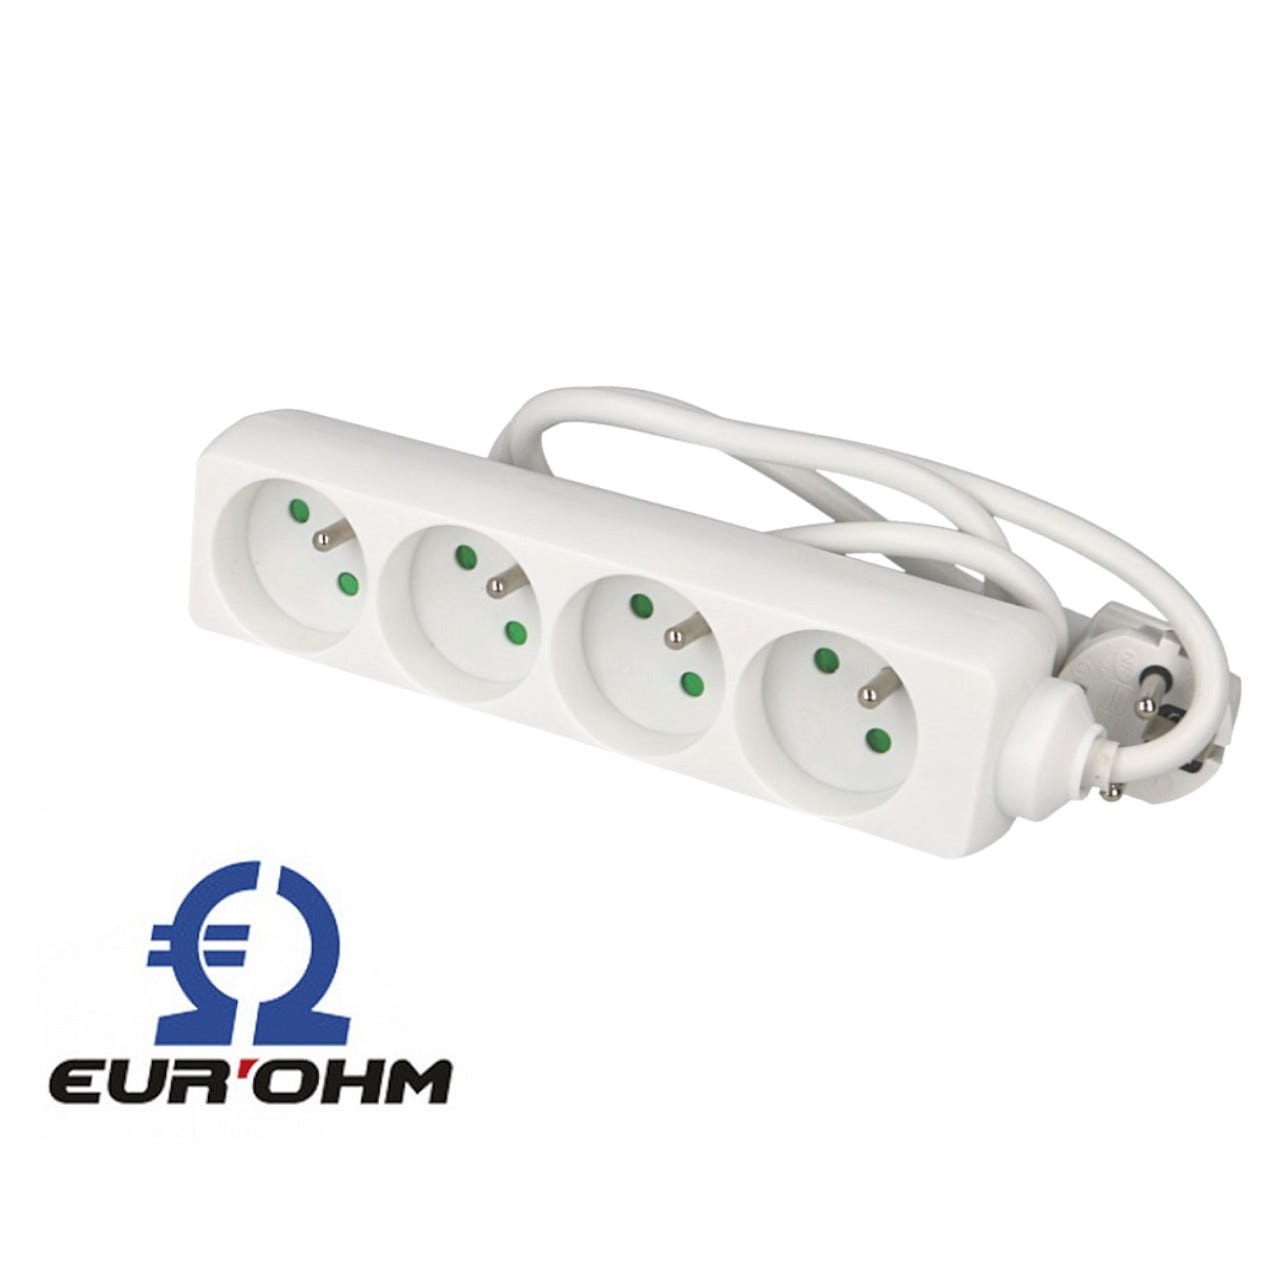 Multiprise 4 prises avec câble 1m sans interrupteur Eur'ohm 1